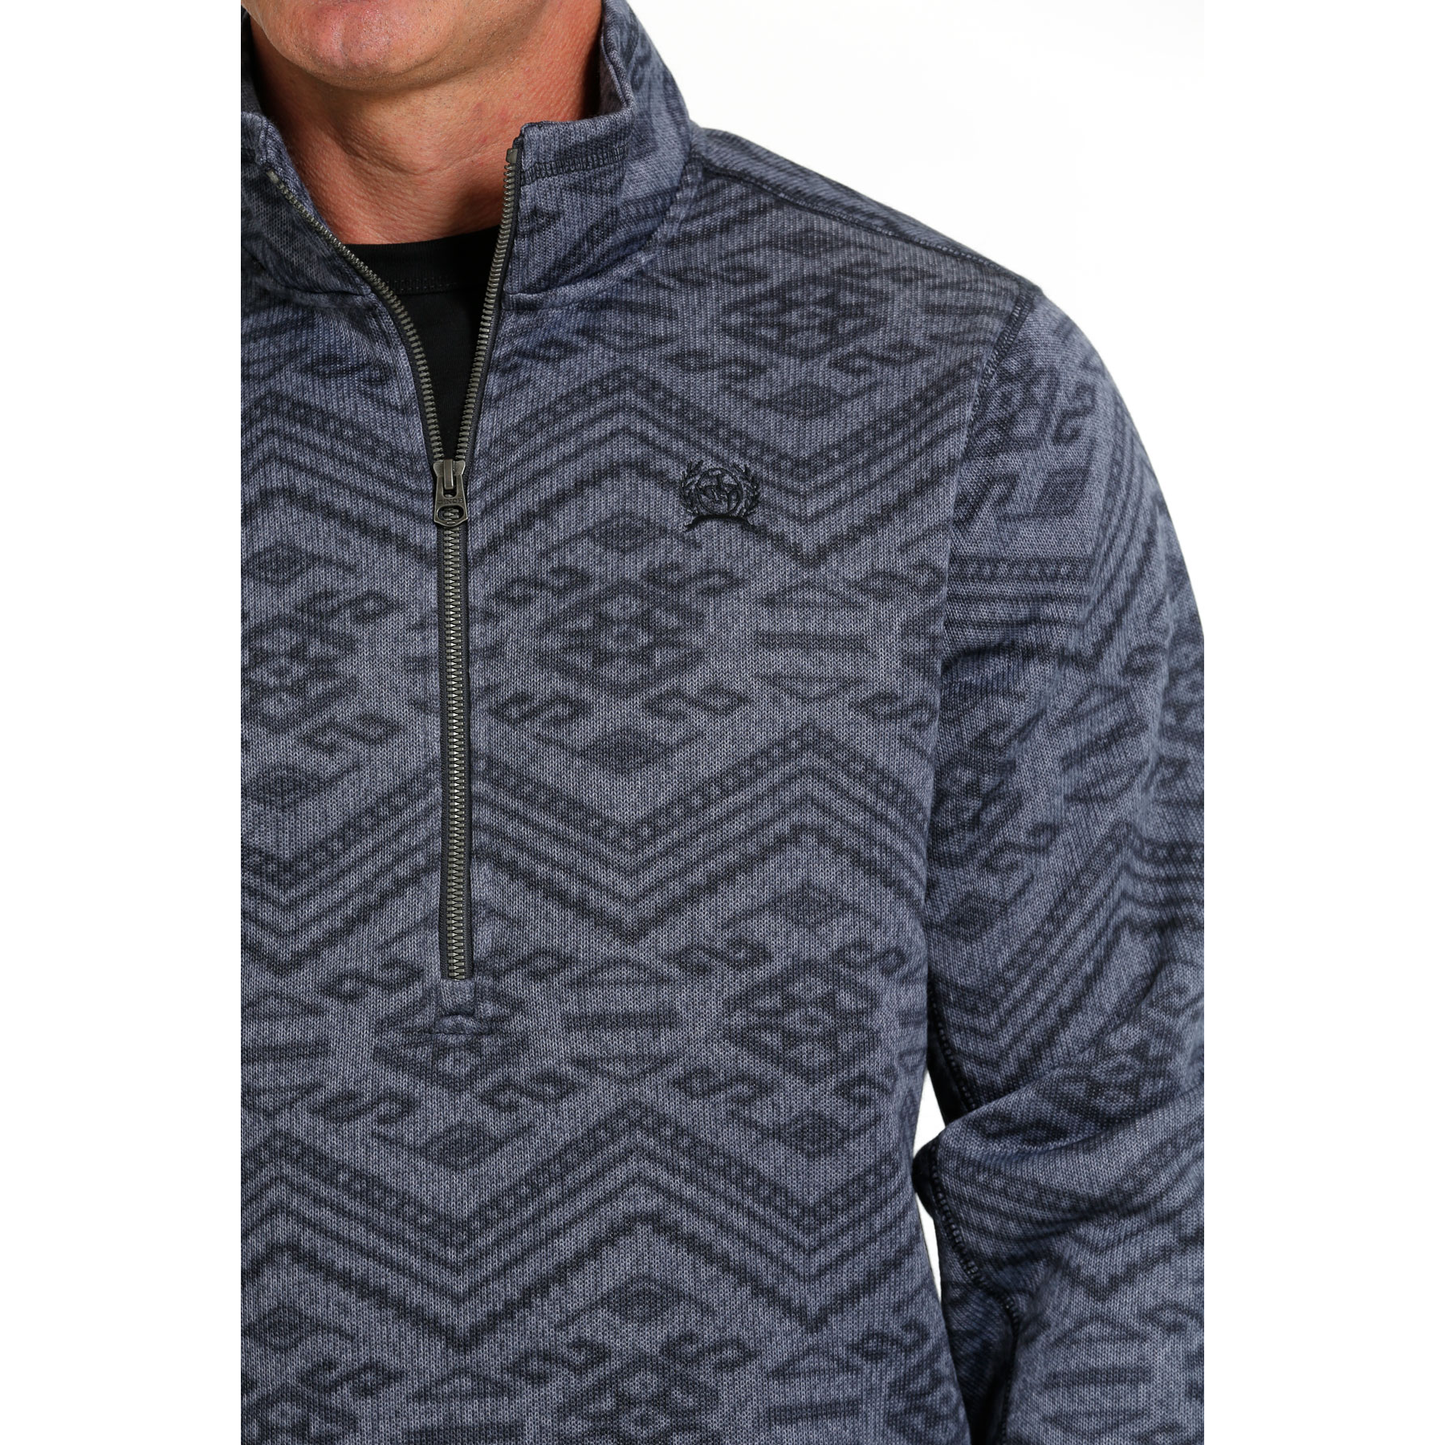 Cinch Men's Blue Aztec Half Zip Sweater Pullover MWK1558004